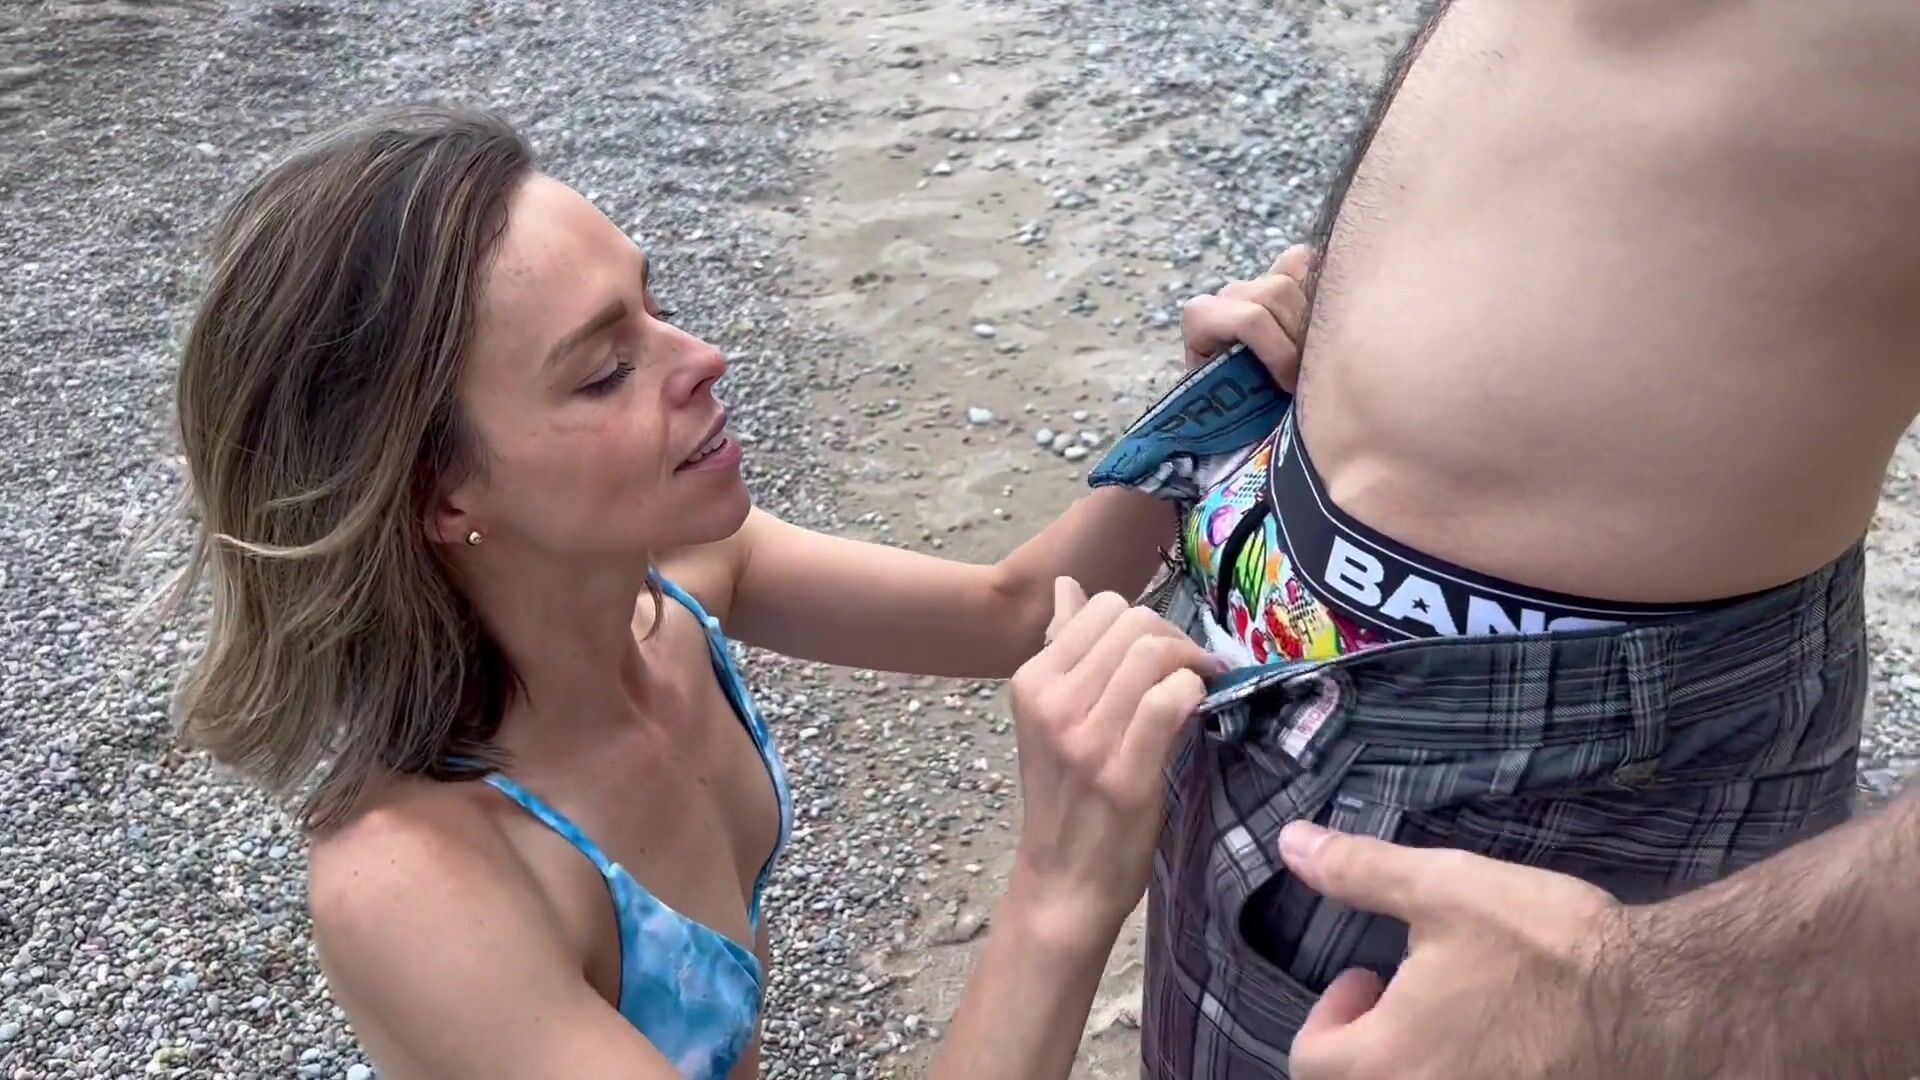 Une femme baise deux bites sur une plage publique en bikini / Crêpages de chignons et soins du visage non protégés / Amateur hotwife regarder en ligne